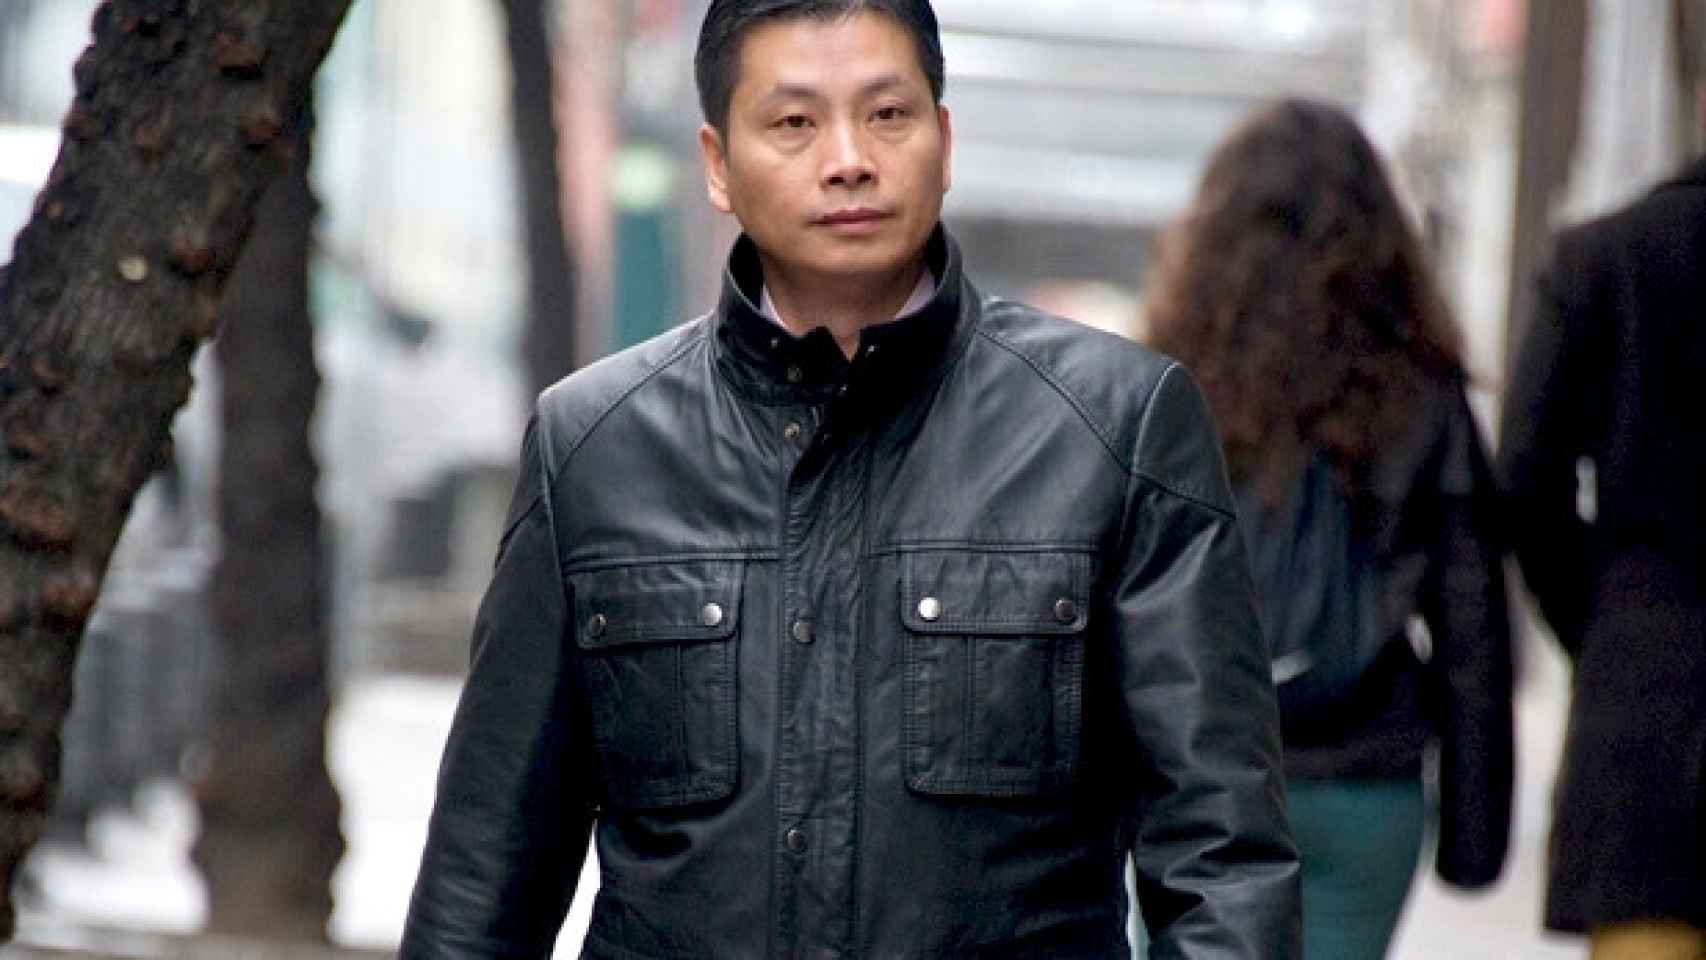 El empresario chino Gao Ping en una imagen de archivo en la entrada de la Audiencia Nacional / EFE